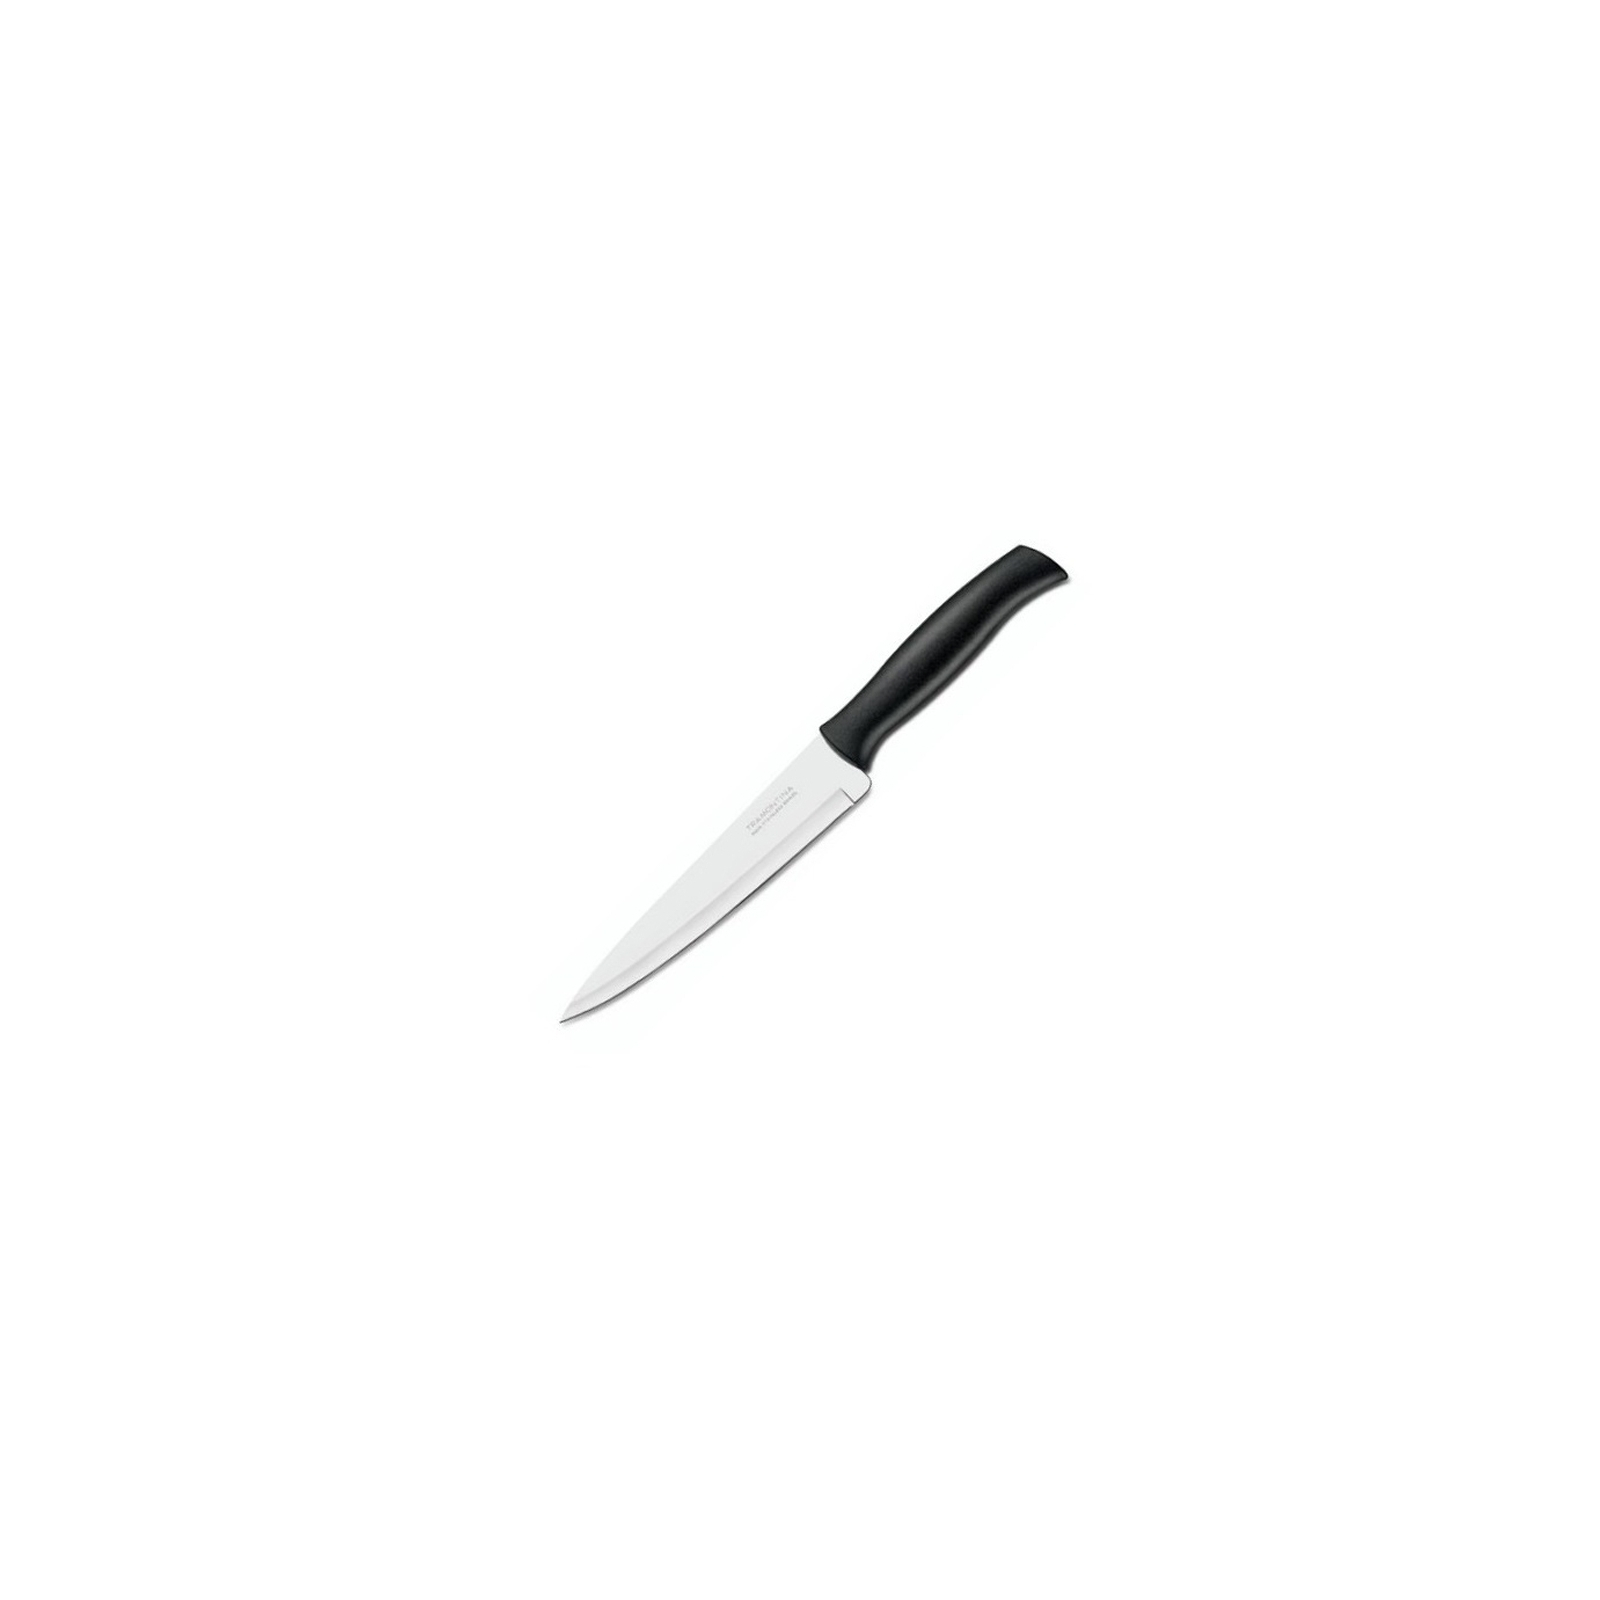 Кухонный нож Tramontina Athus универсальный 203 мм Black (23084/108)